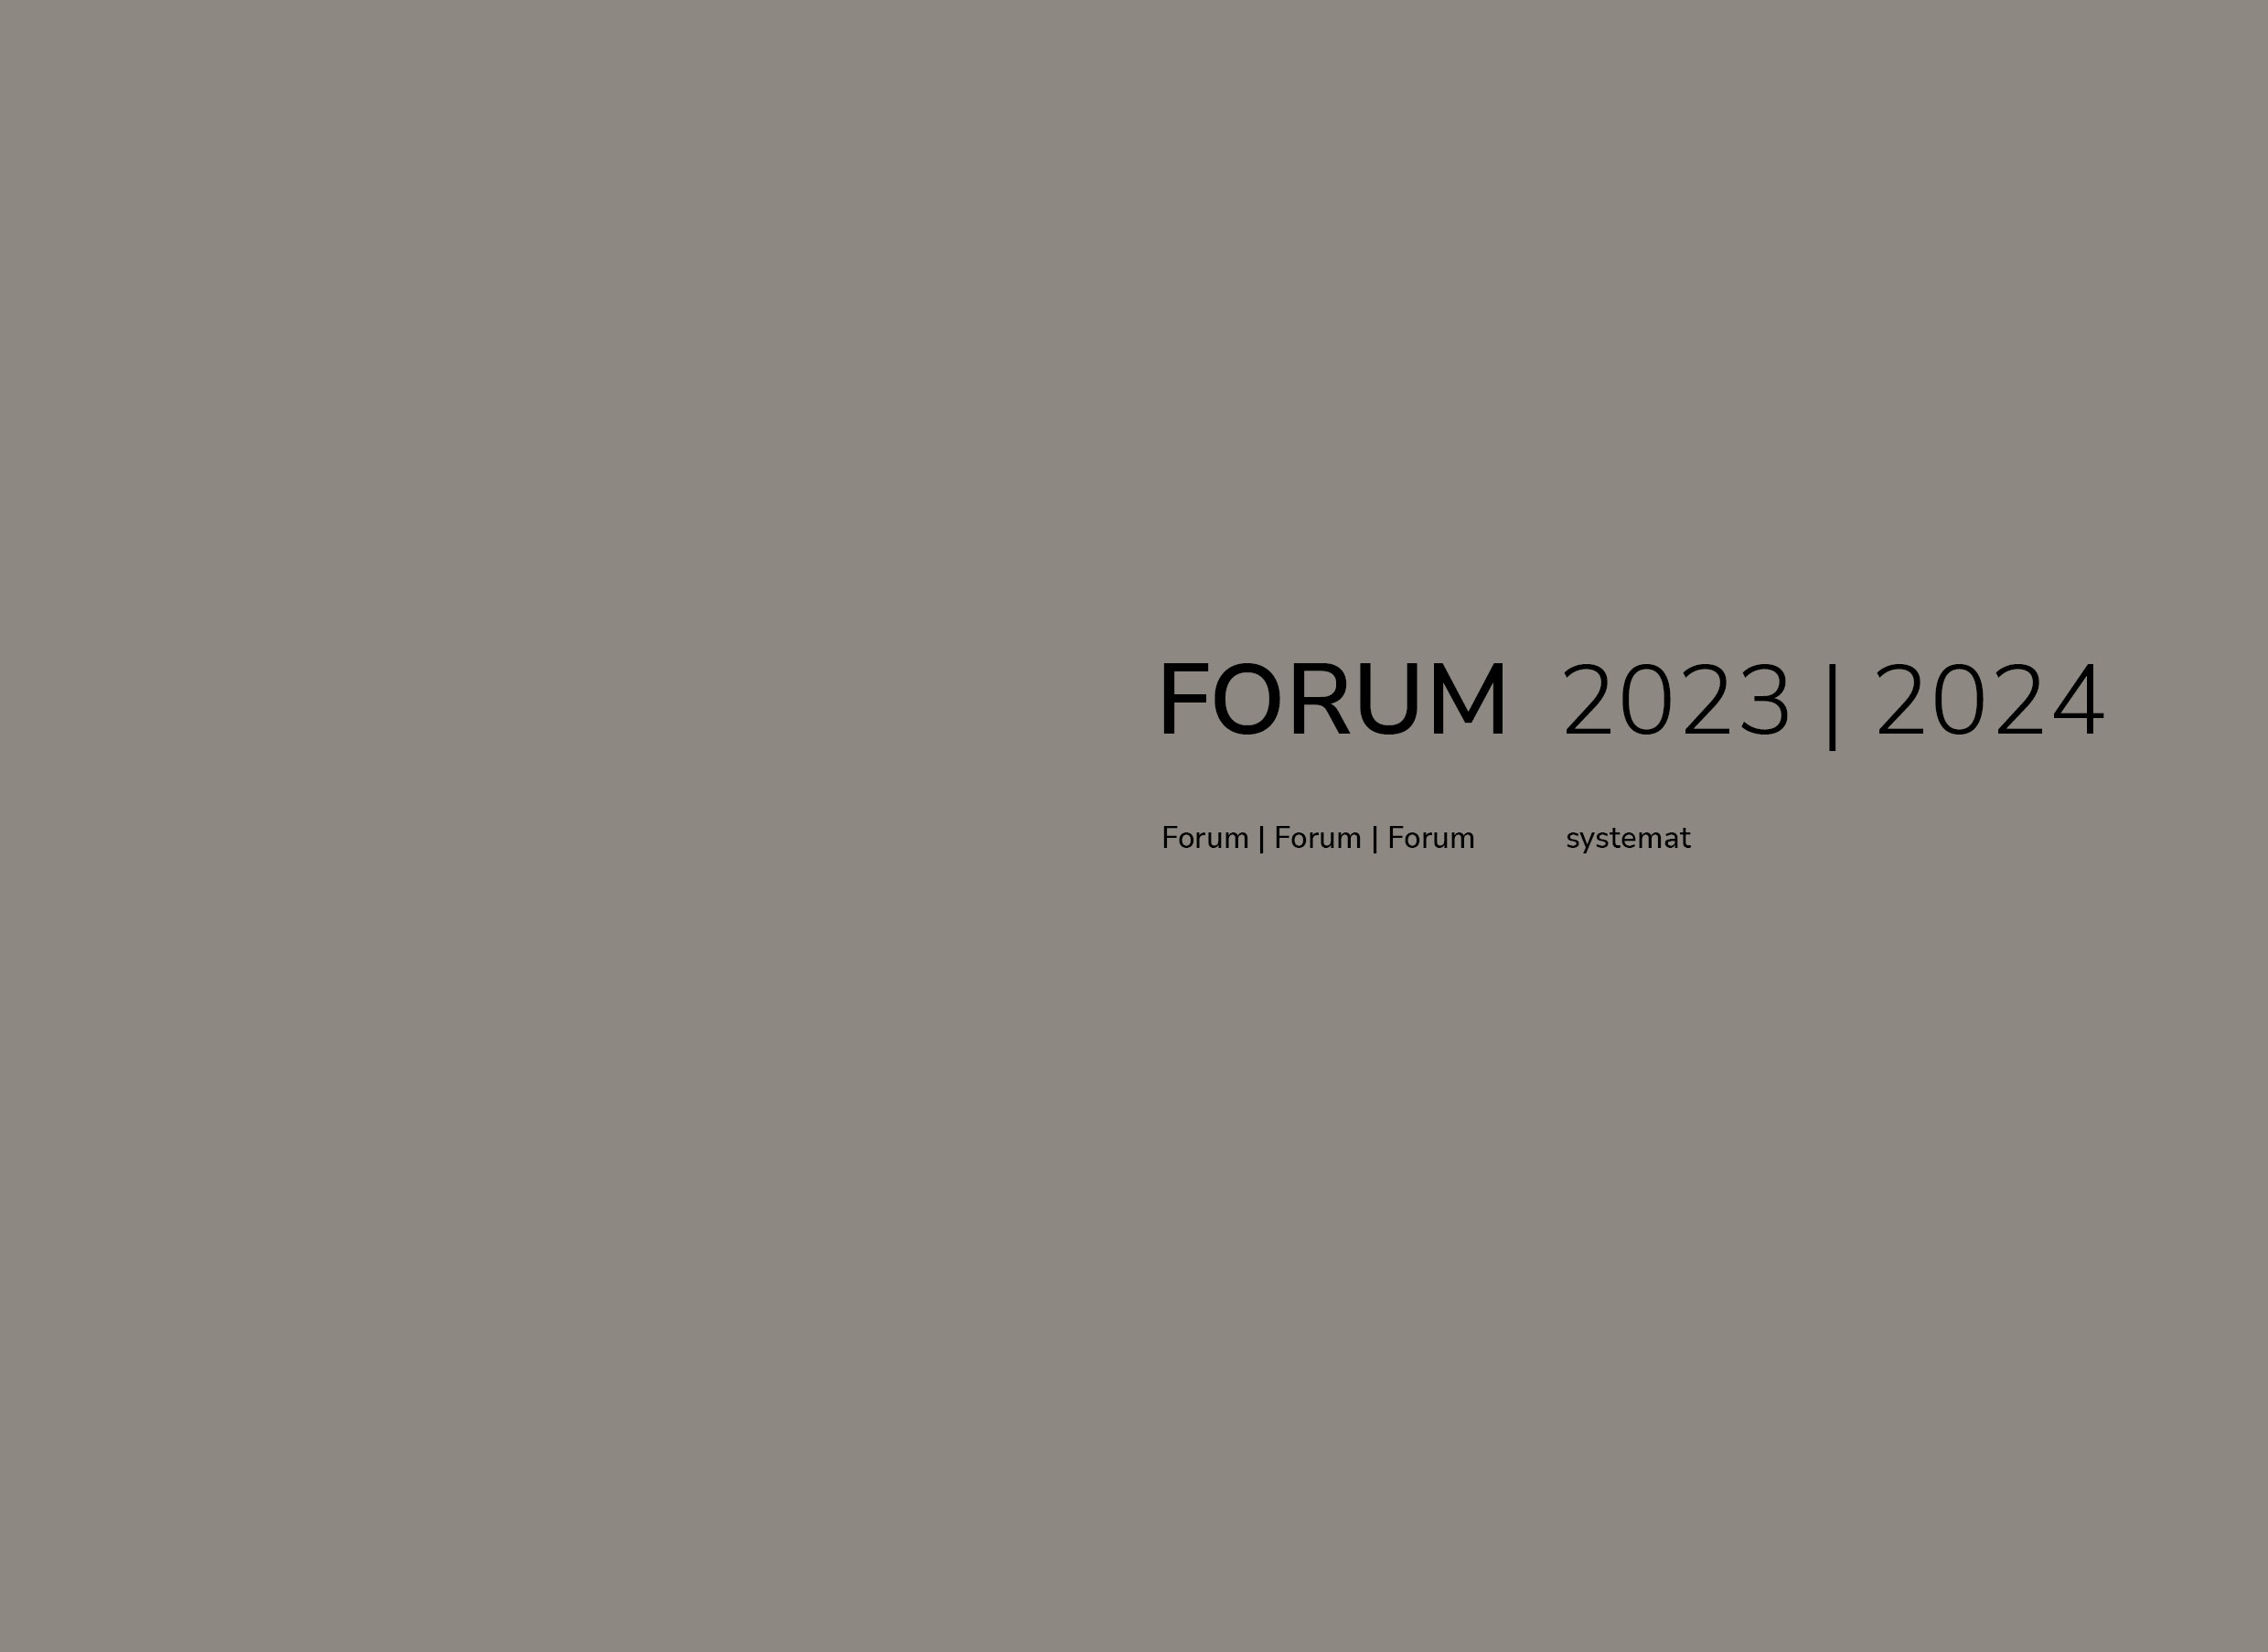 [Translate to Français:] Forum 2023